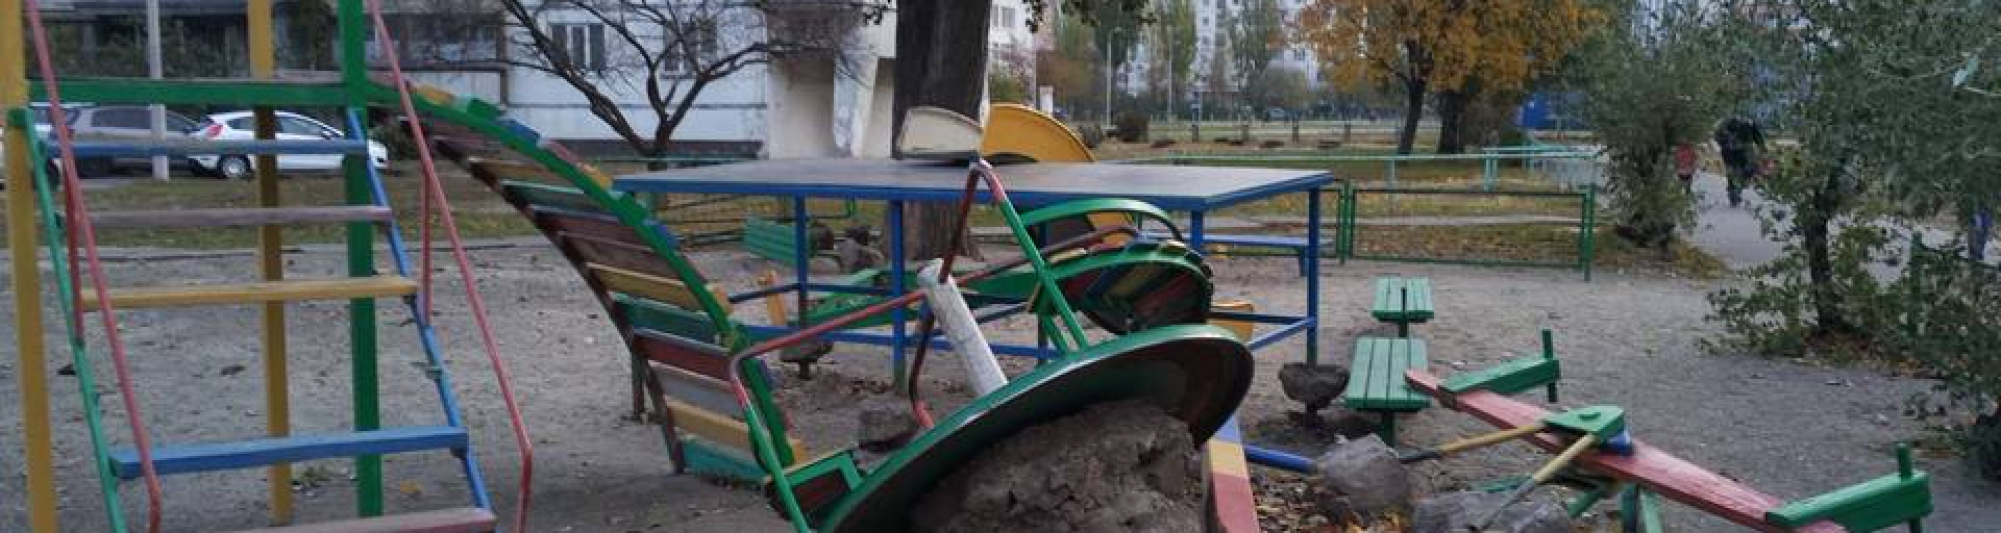 Более 70 старых детских площадок были отремонтированы в текущем году